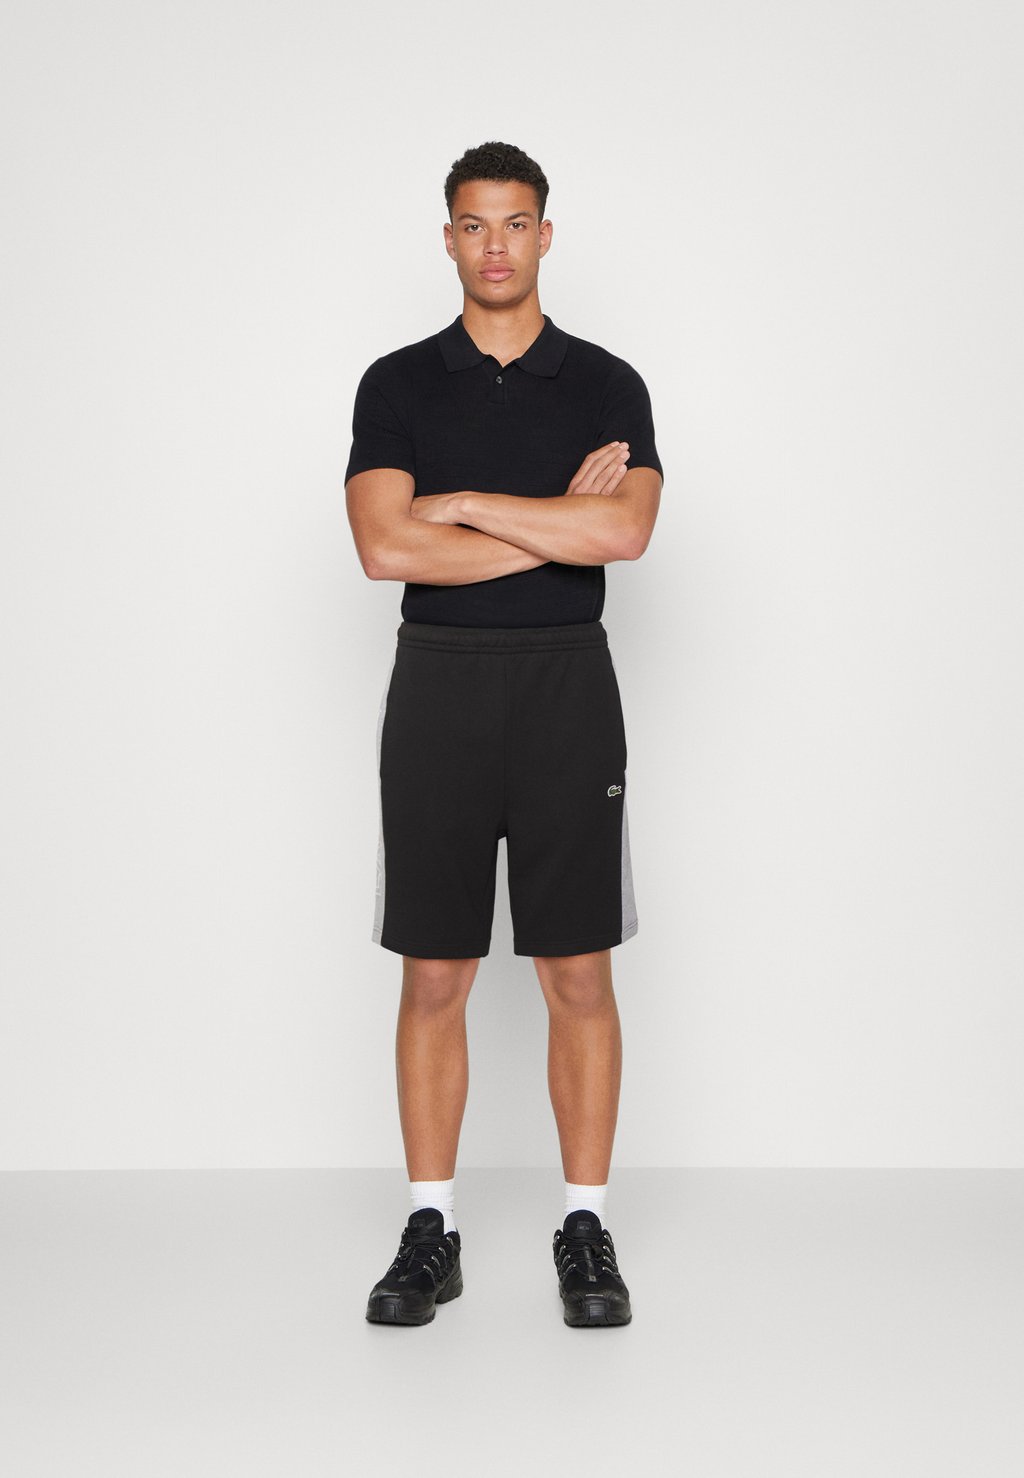 Спортивные брюки Color Block Shorts Lacoste, цвет noir/gris chine